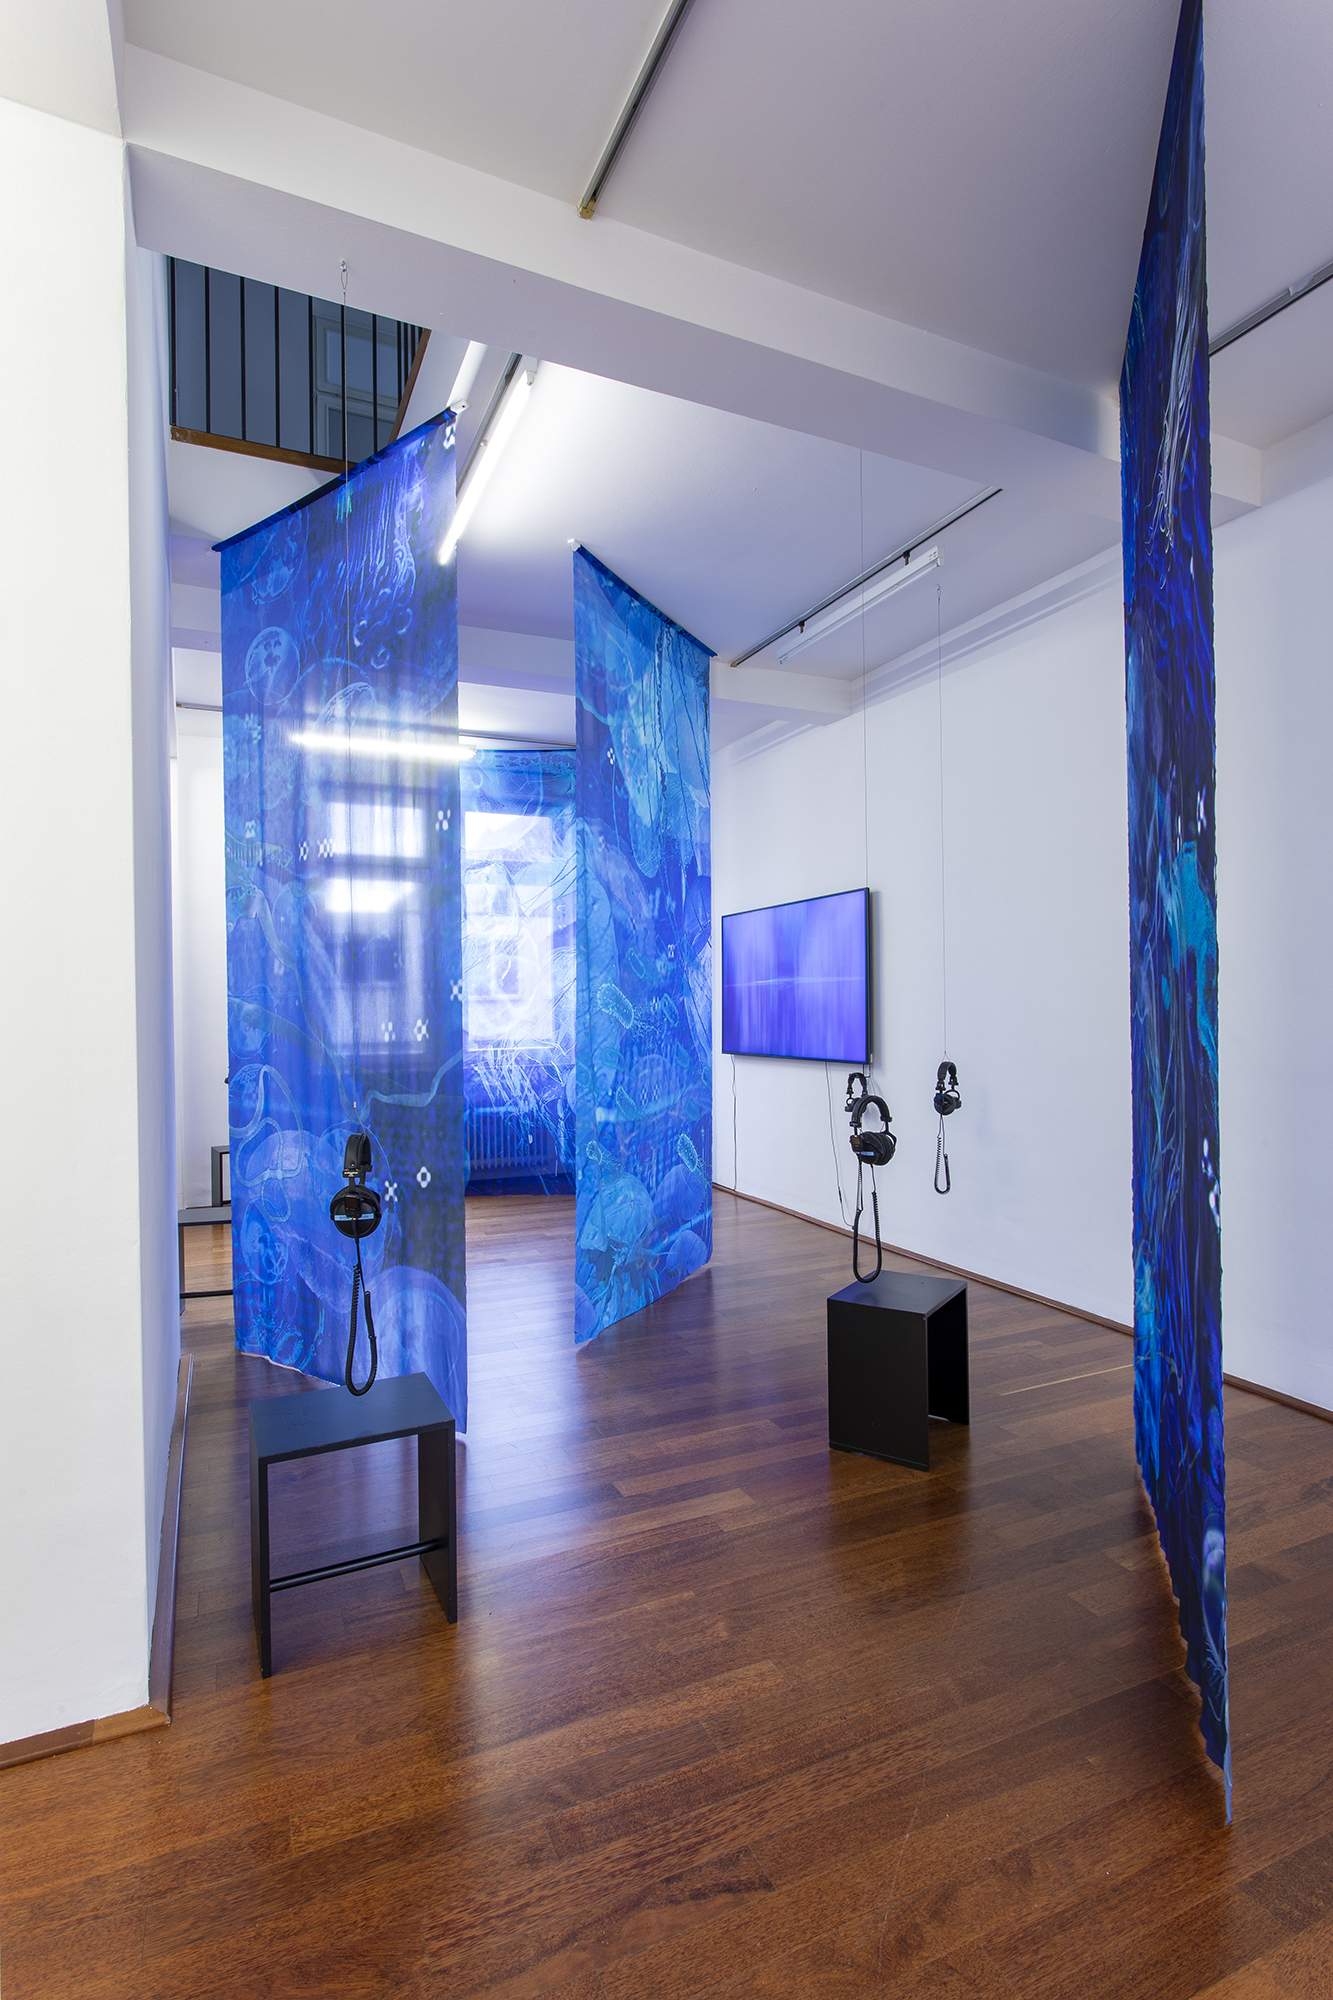 Einen Riesigen Schwarm, installation view at Rudolf-Scharpf-Galerie in Ludwigshafen, Germany